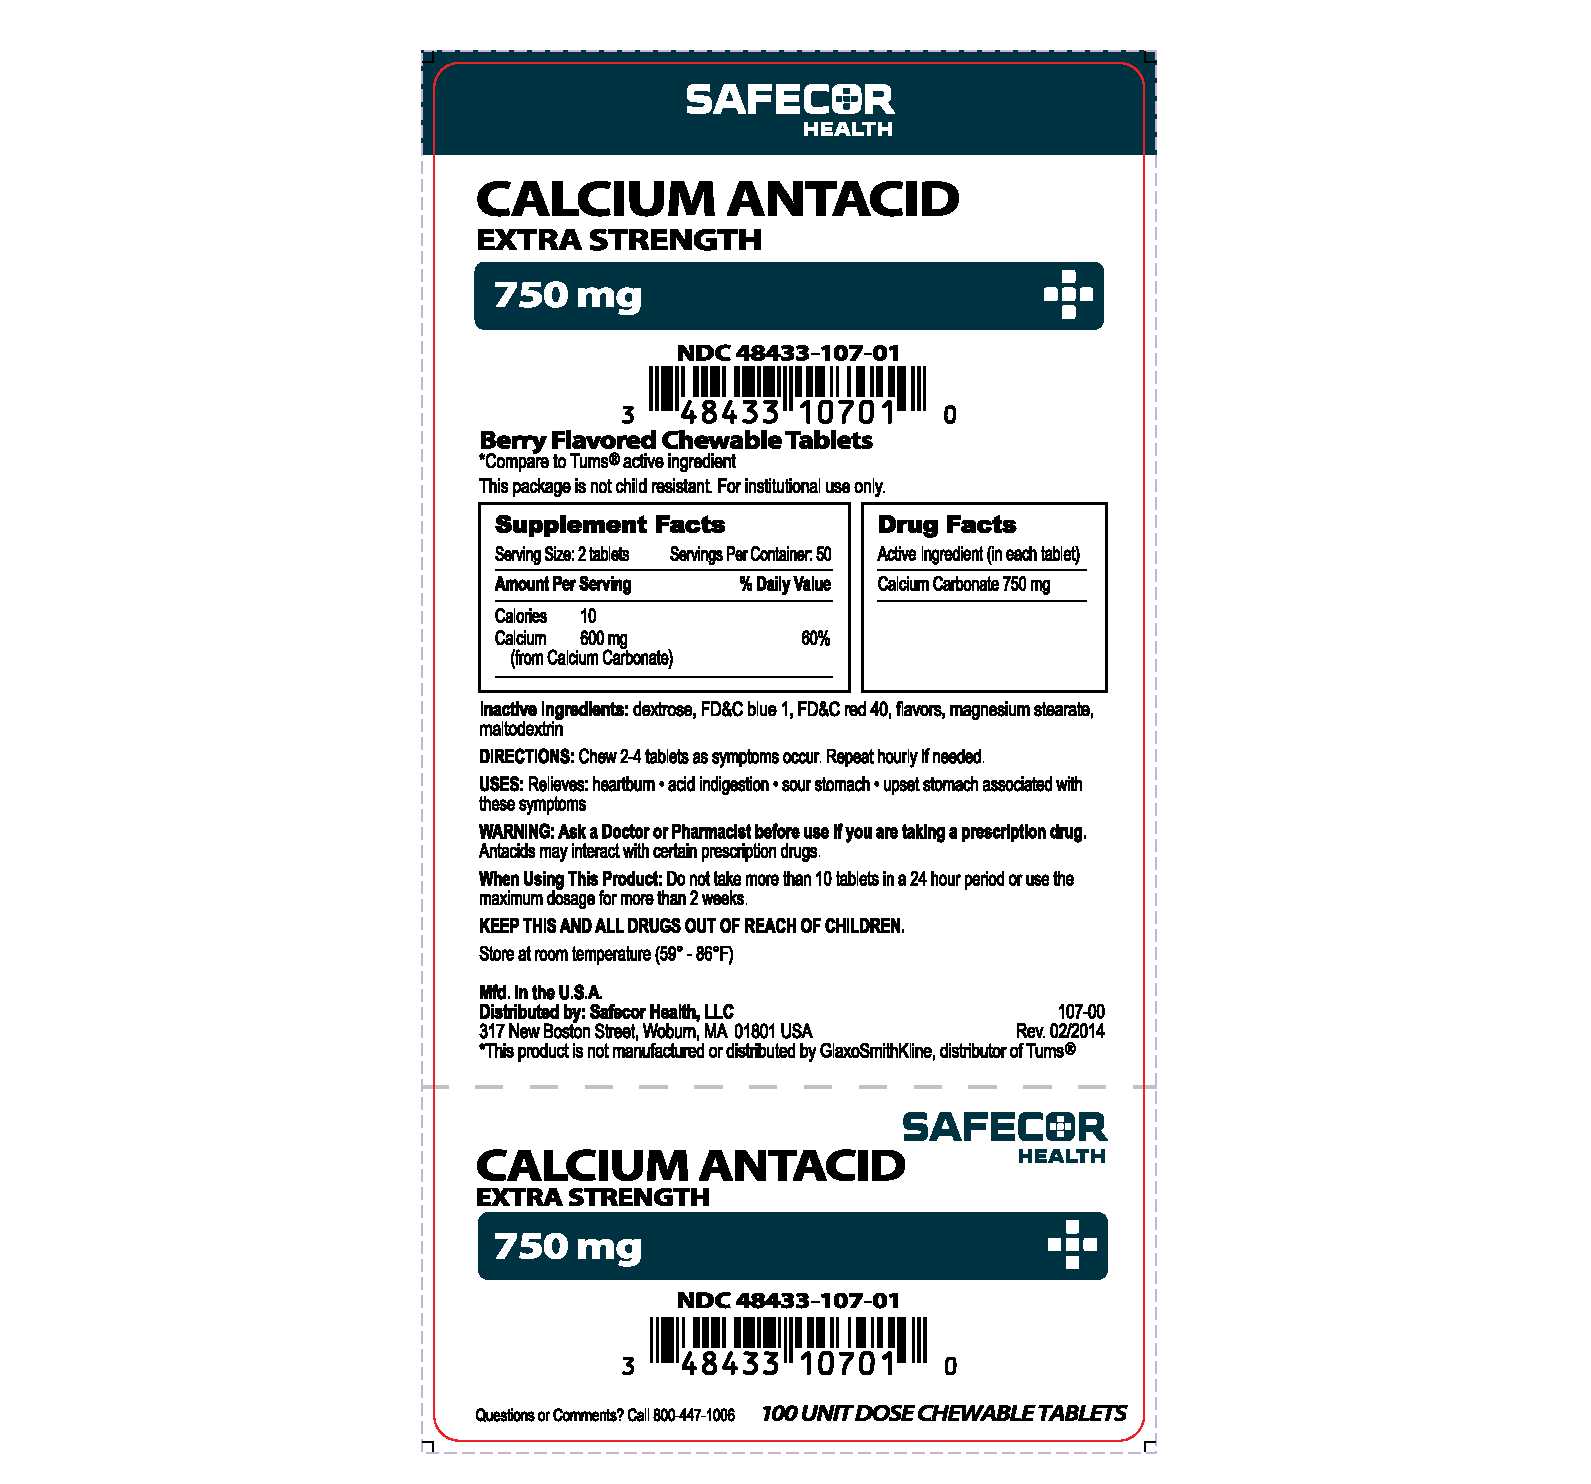 Calcium Antacid 750 mg UD box label